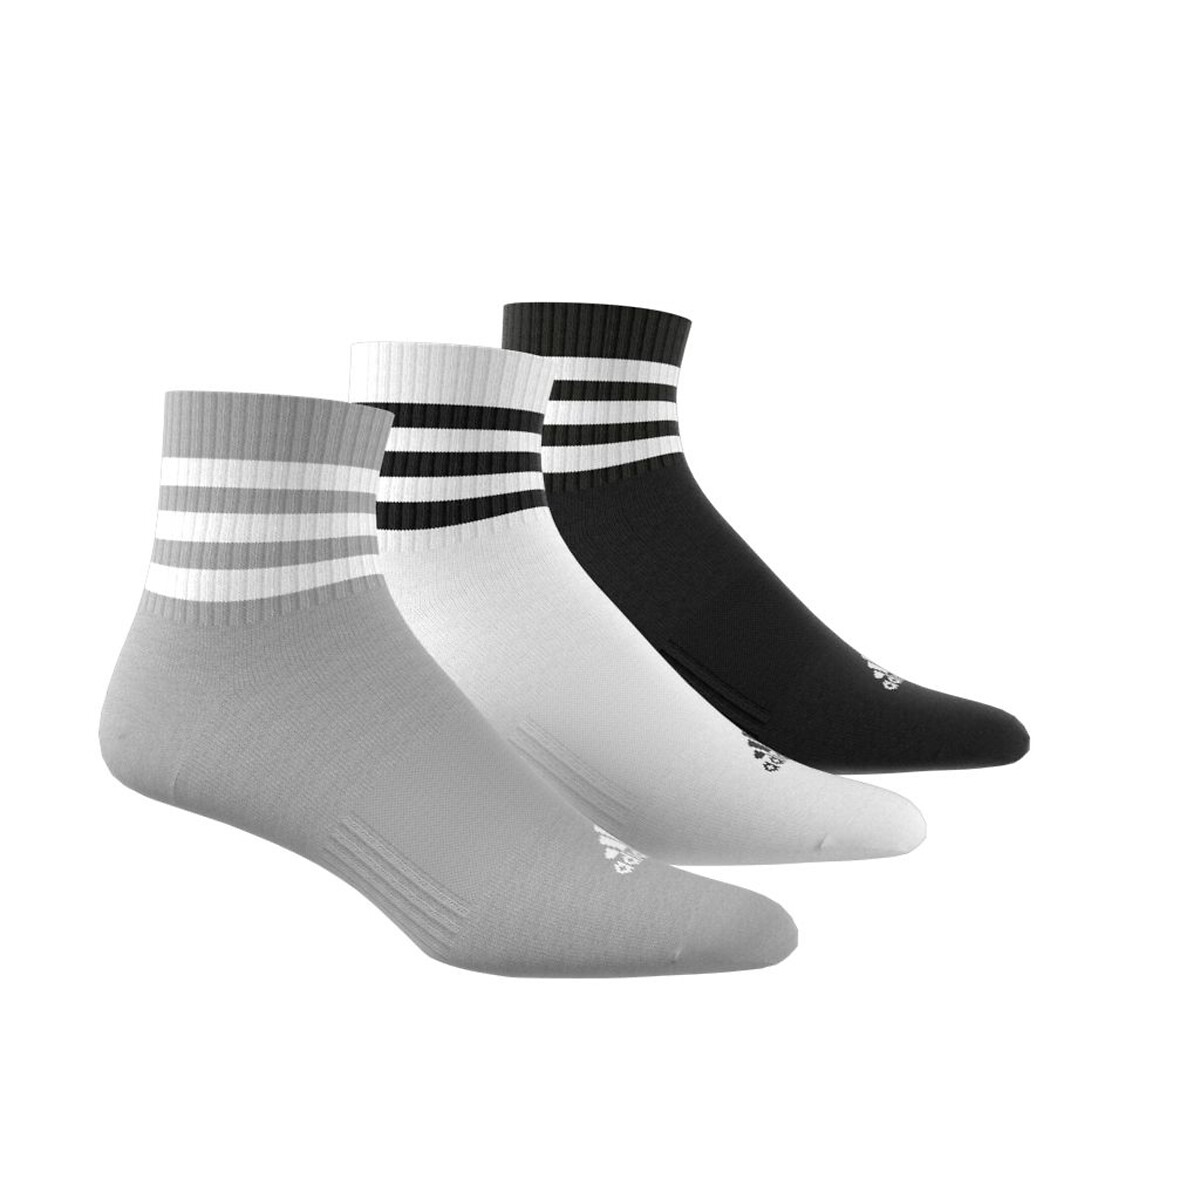 3 Paar halbhohe Socken, angeraut von adidas performance